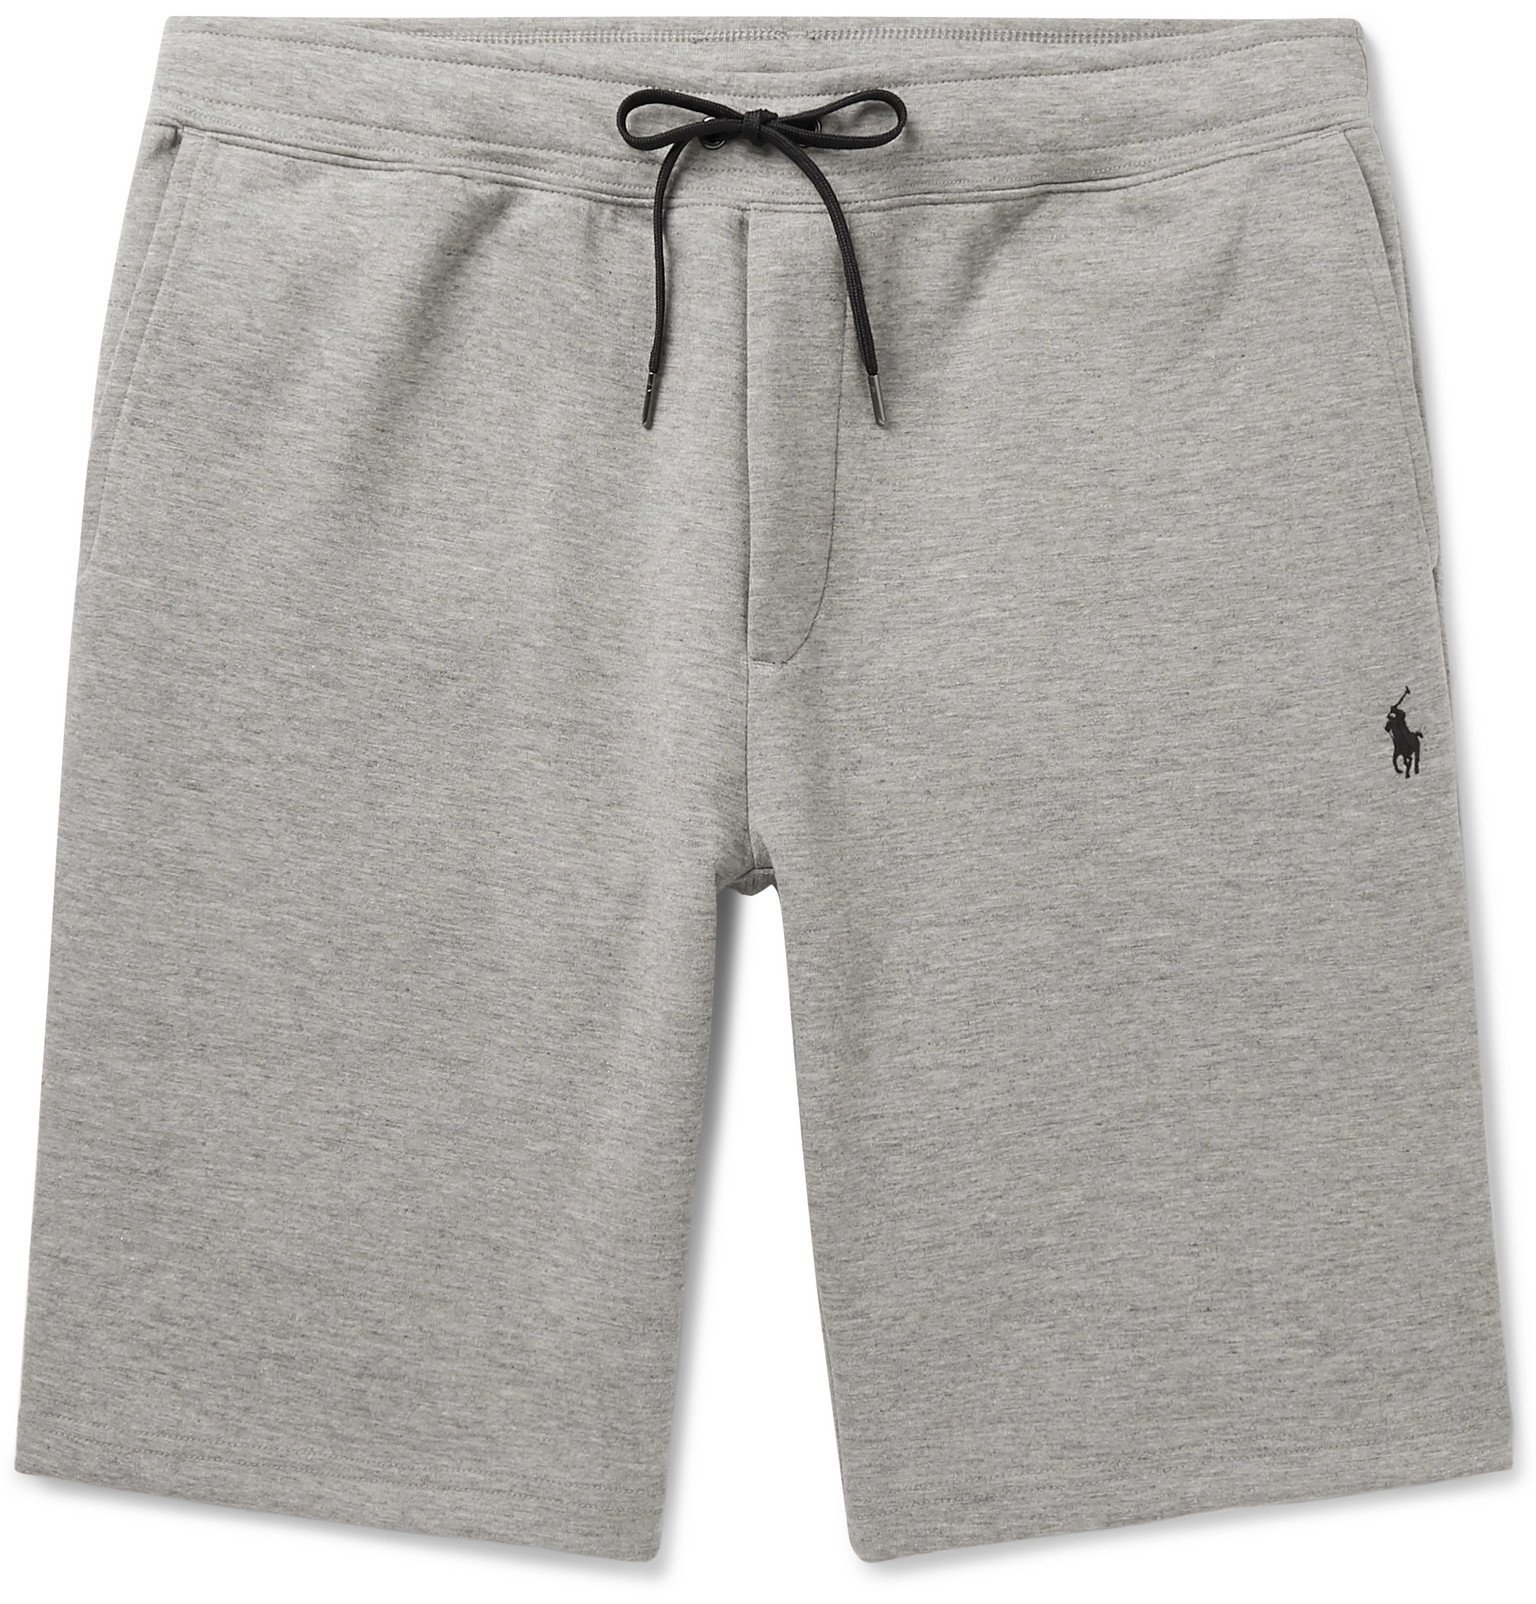 polo jersey shorts